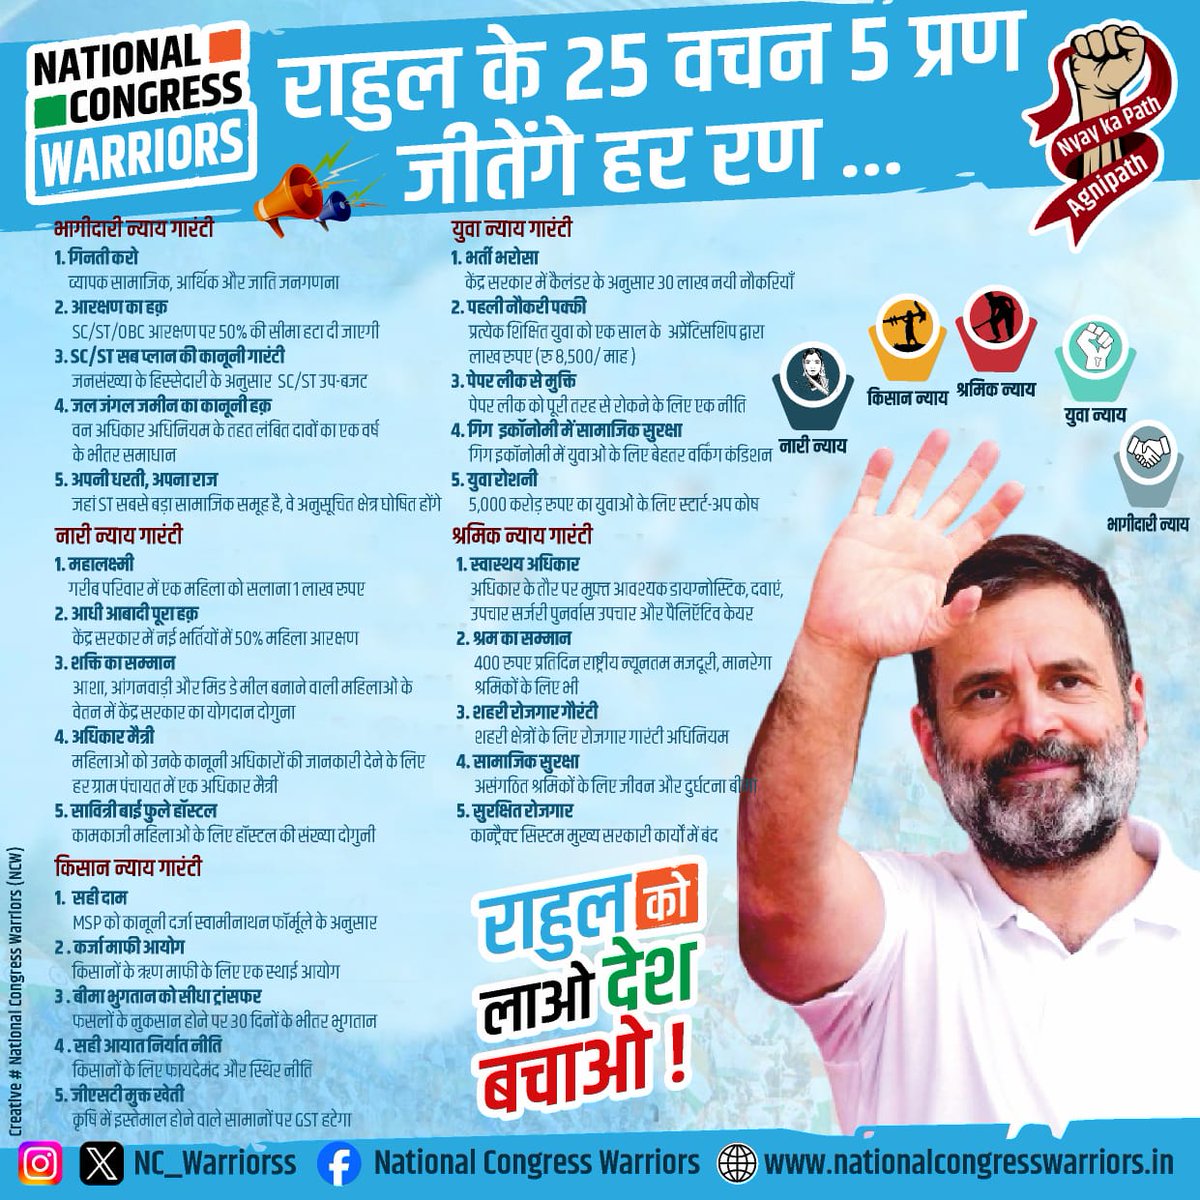 राहुल के 25 वचन पांच प्रण 
जीतेंगे हर रण....

मेरा वोट पांच न्याय के लिए इंडिया गठबंधन को और आपका वोट किसको?

#HaathBadlegaHalaat
#RahulKoLaoDeshBachao 
#NYAY_KA_PATH_AGNIPATH 
#Vote4INDIA